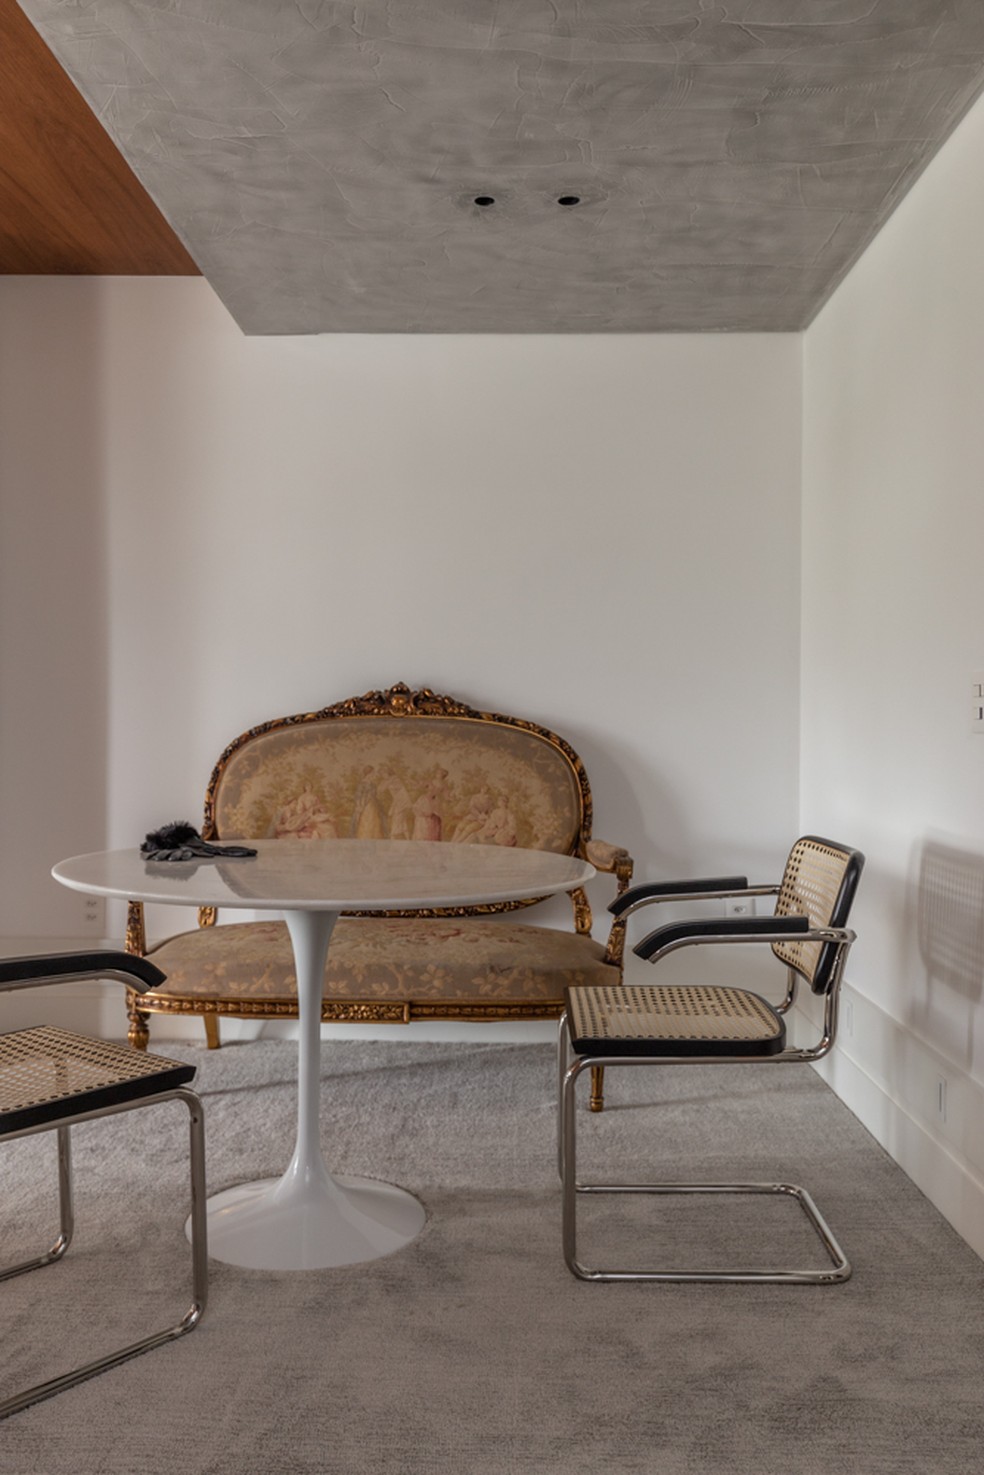 Em outro canto da suíte máster, o sofá do século XIX convive em harmonia com outras peças de mobiliário mais recentes — Foto: Marcelo Donadussi